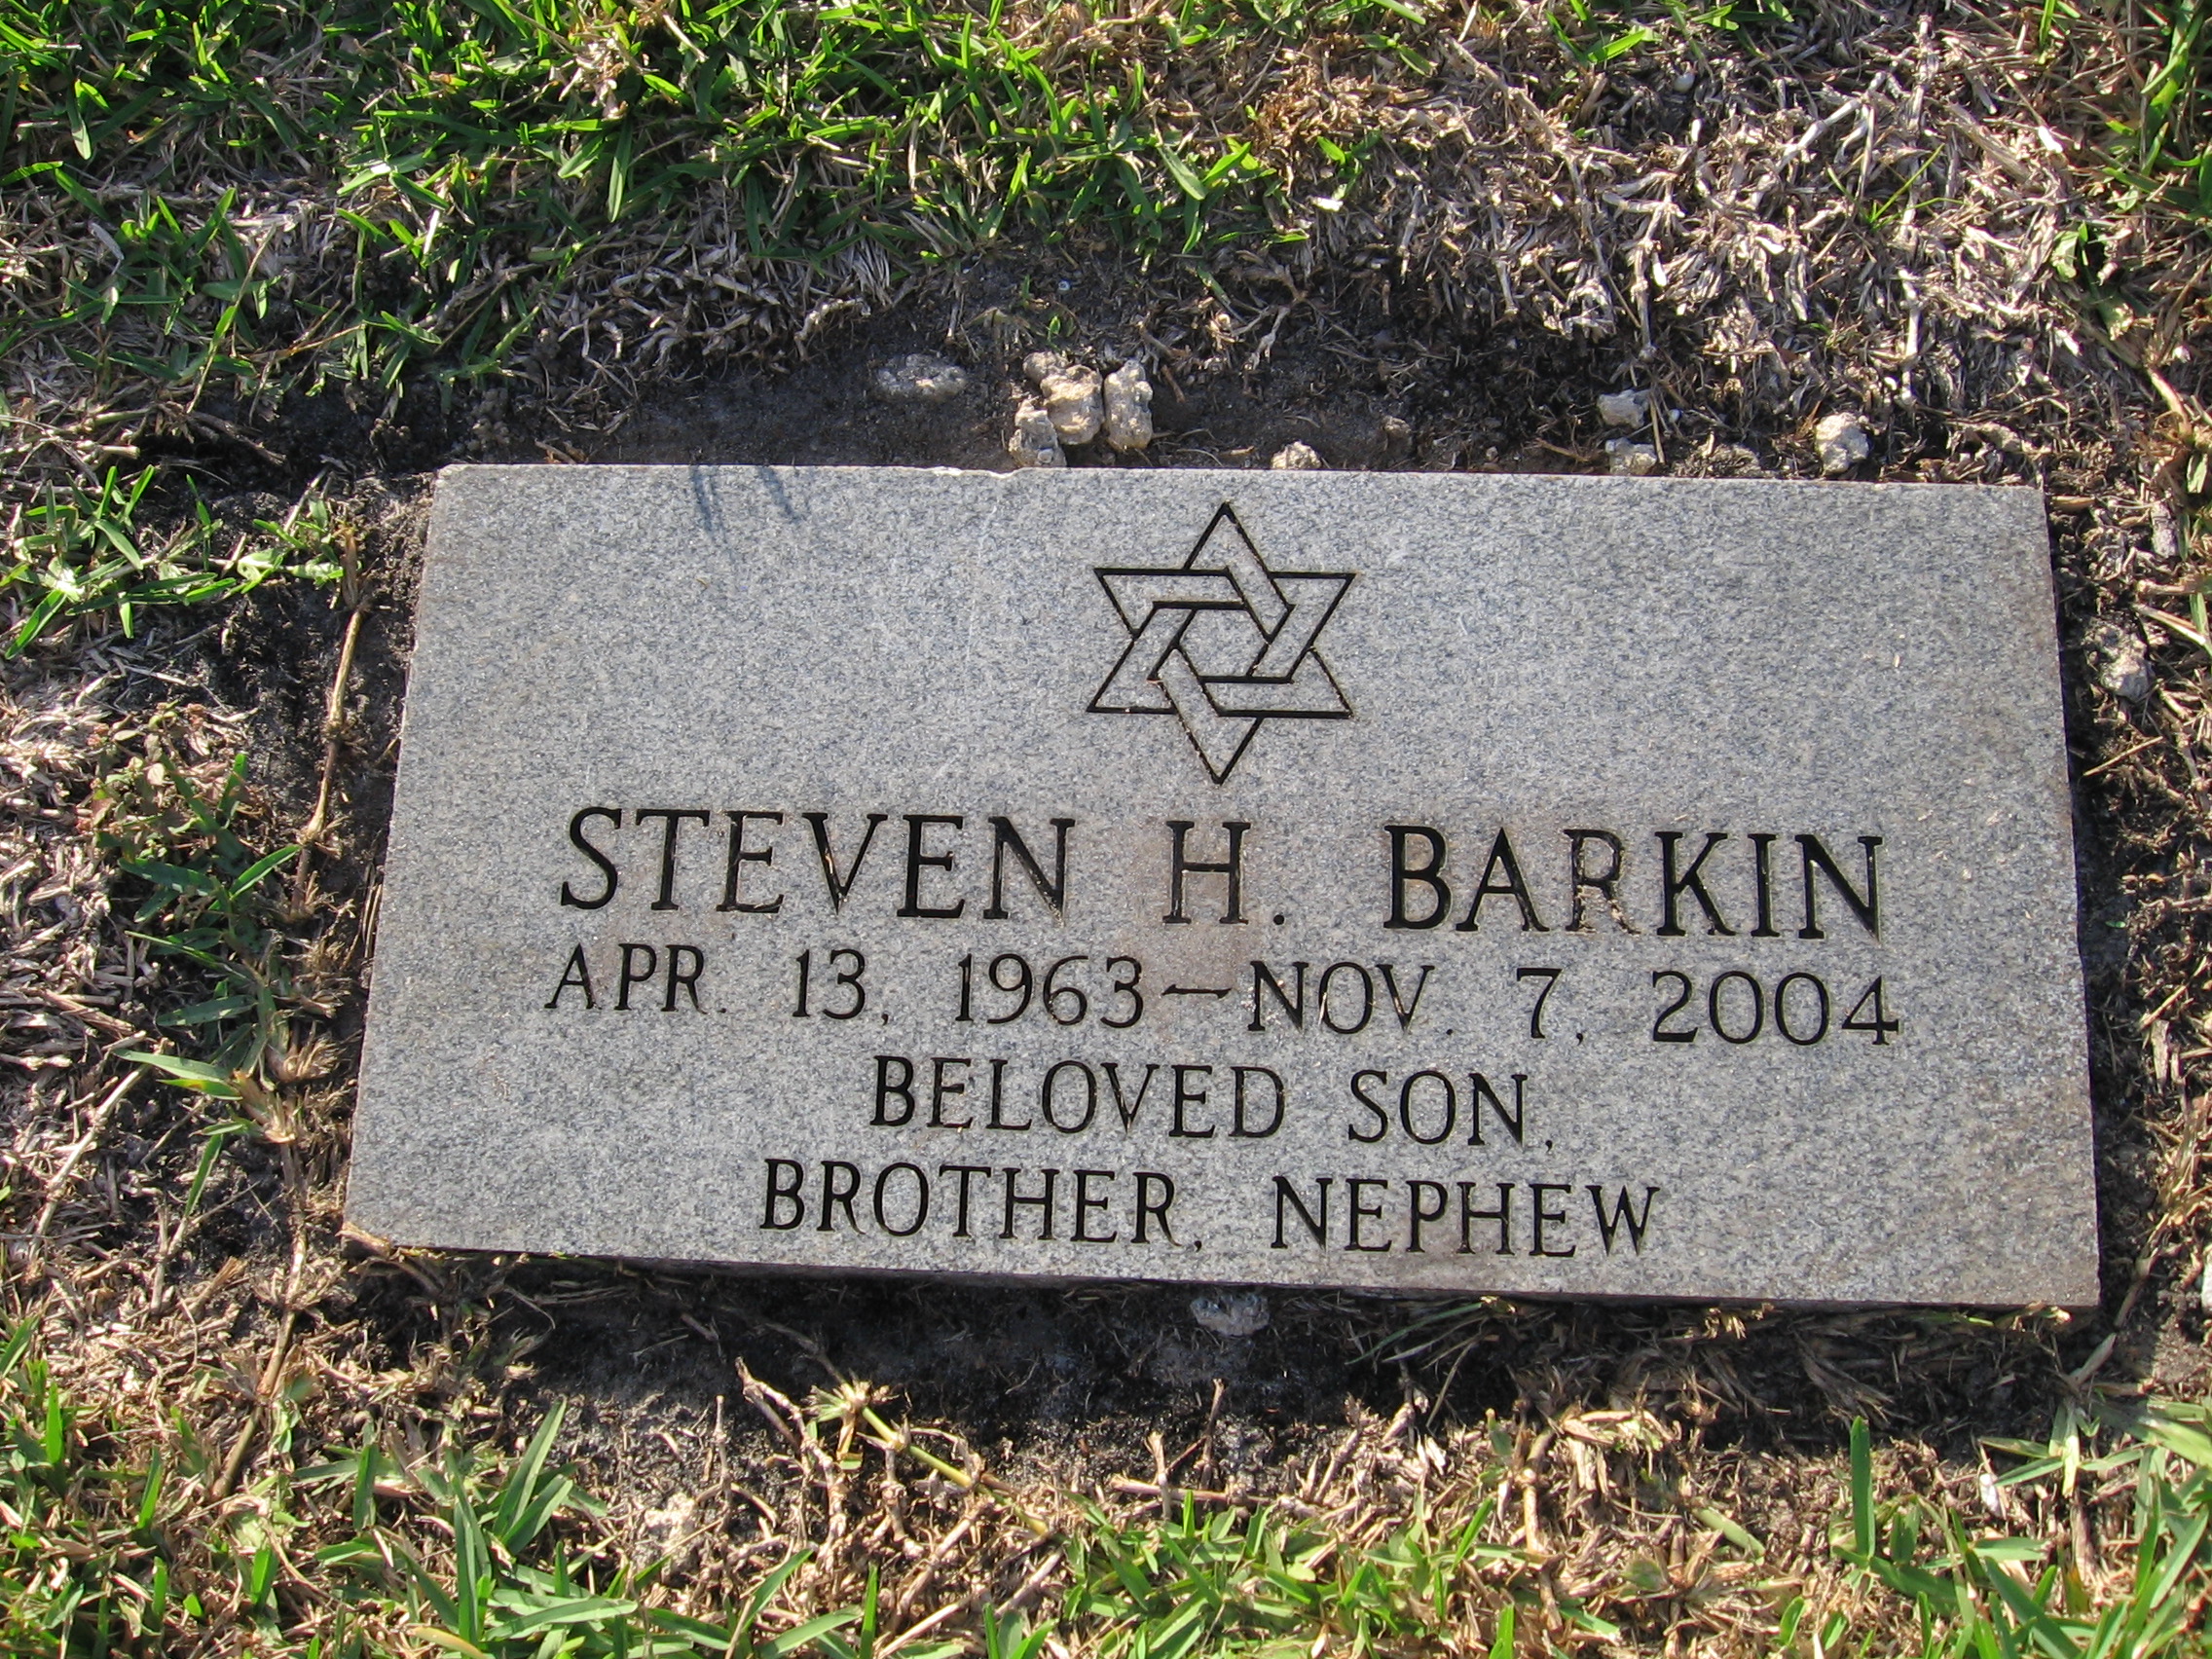 Steven H Barkin